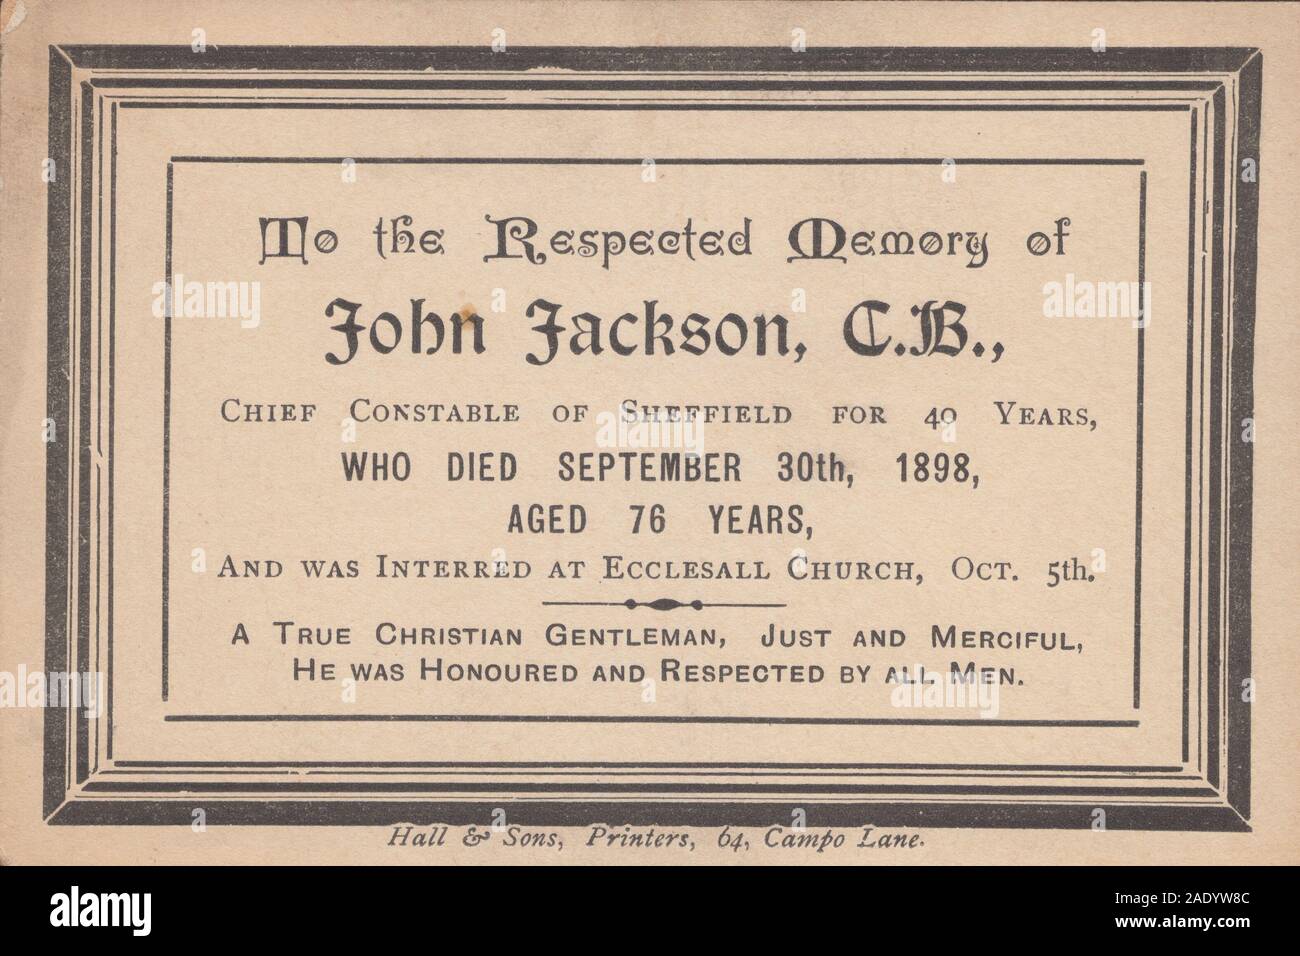 Carte In Memoriam Pour John Jackson, C.B. Le chef de la police de Sheffield depuis 40 ans. Décédé le 30 septembre 1898 âgé de 76 ans et est enterré à l'Église Ecclesall, Oct 5th. Banque D'Images